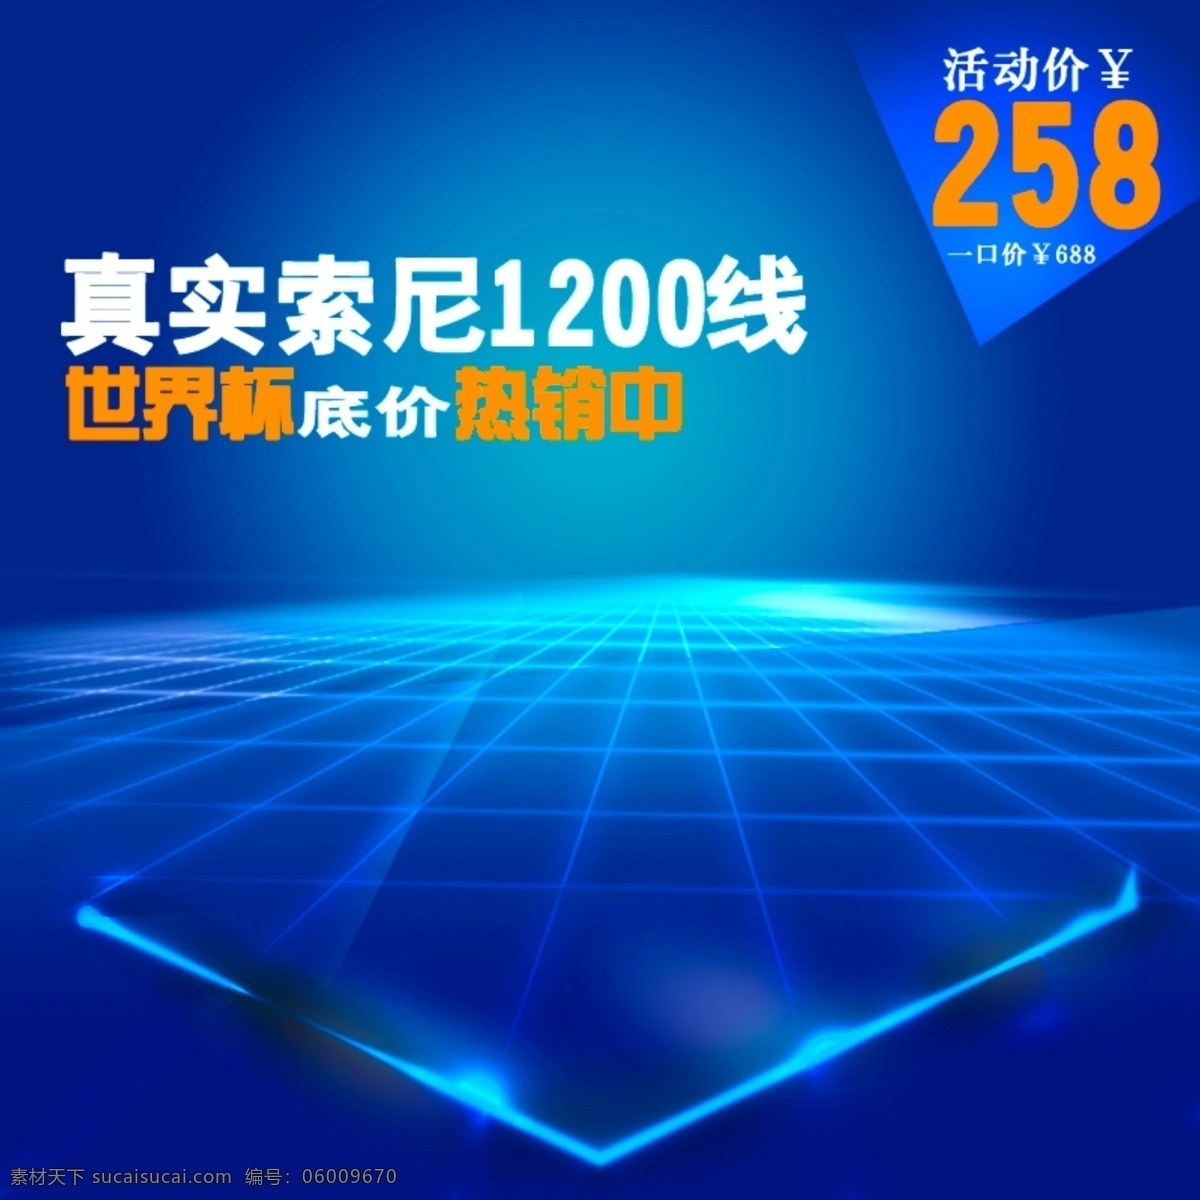 蓝色 索尼 背景 淘宝 主 图 淘宝主图 设计平面 新品首发 中文模版 活动 聚划算 模板